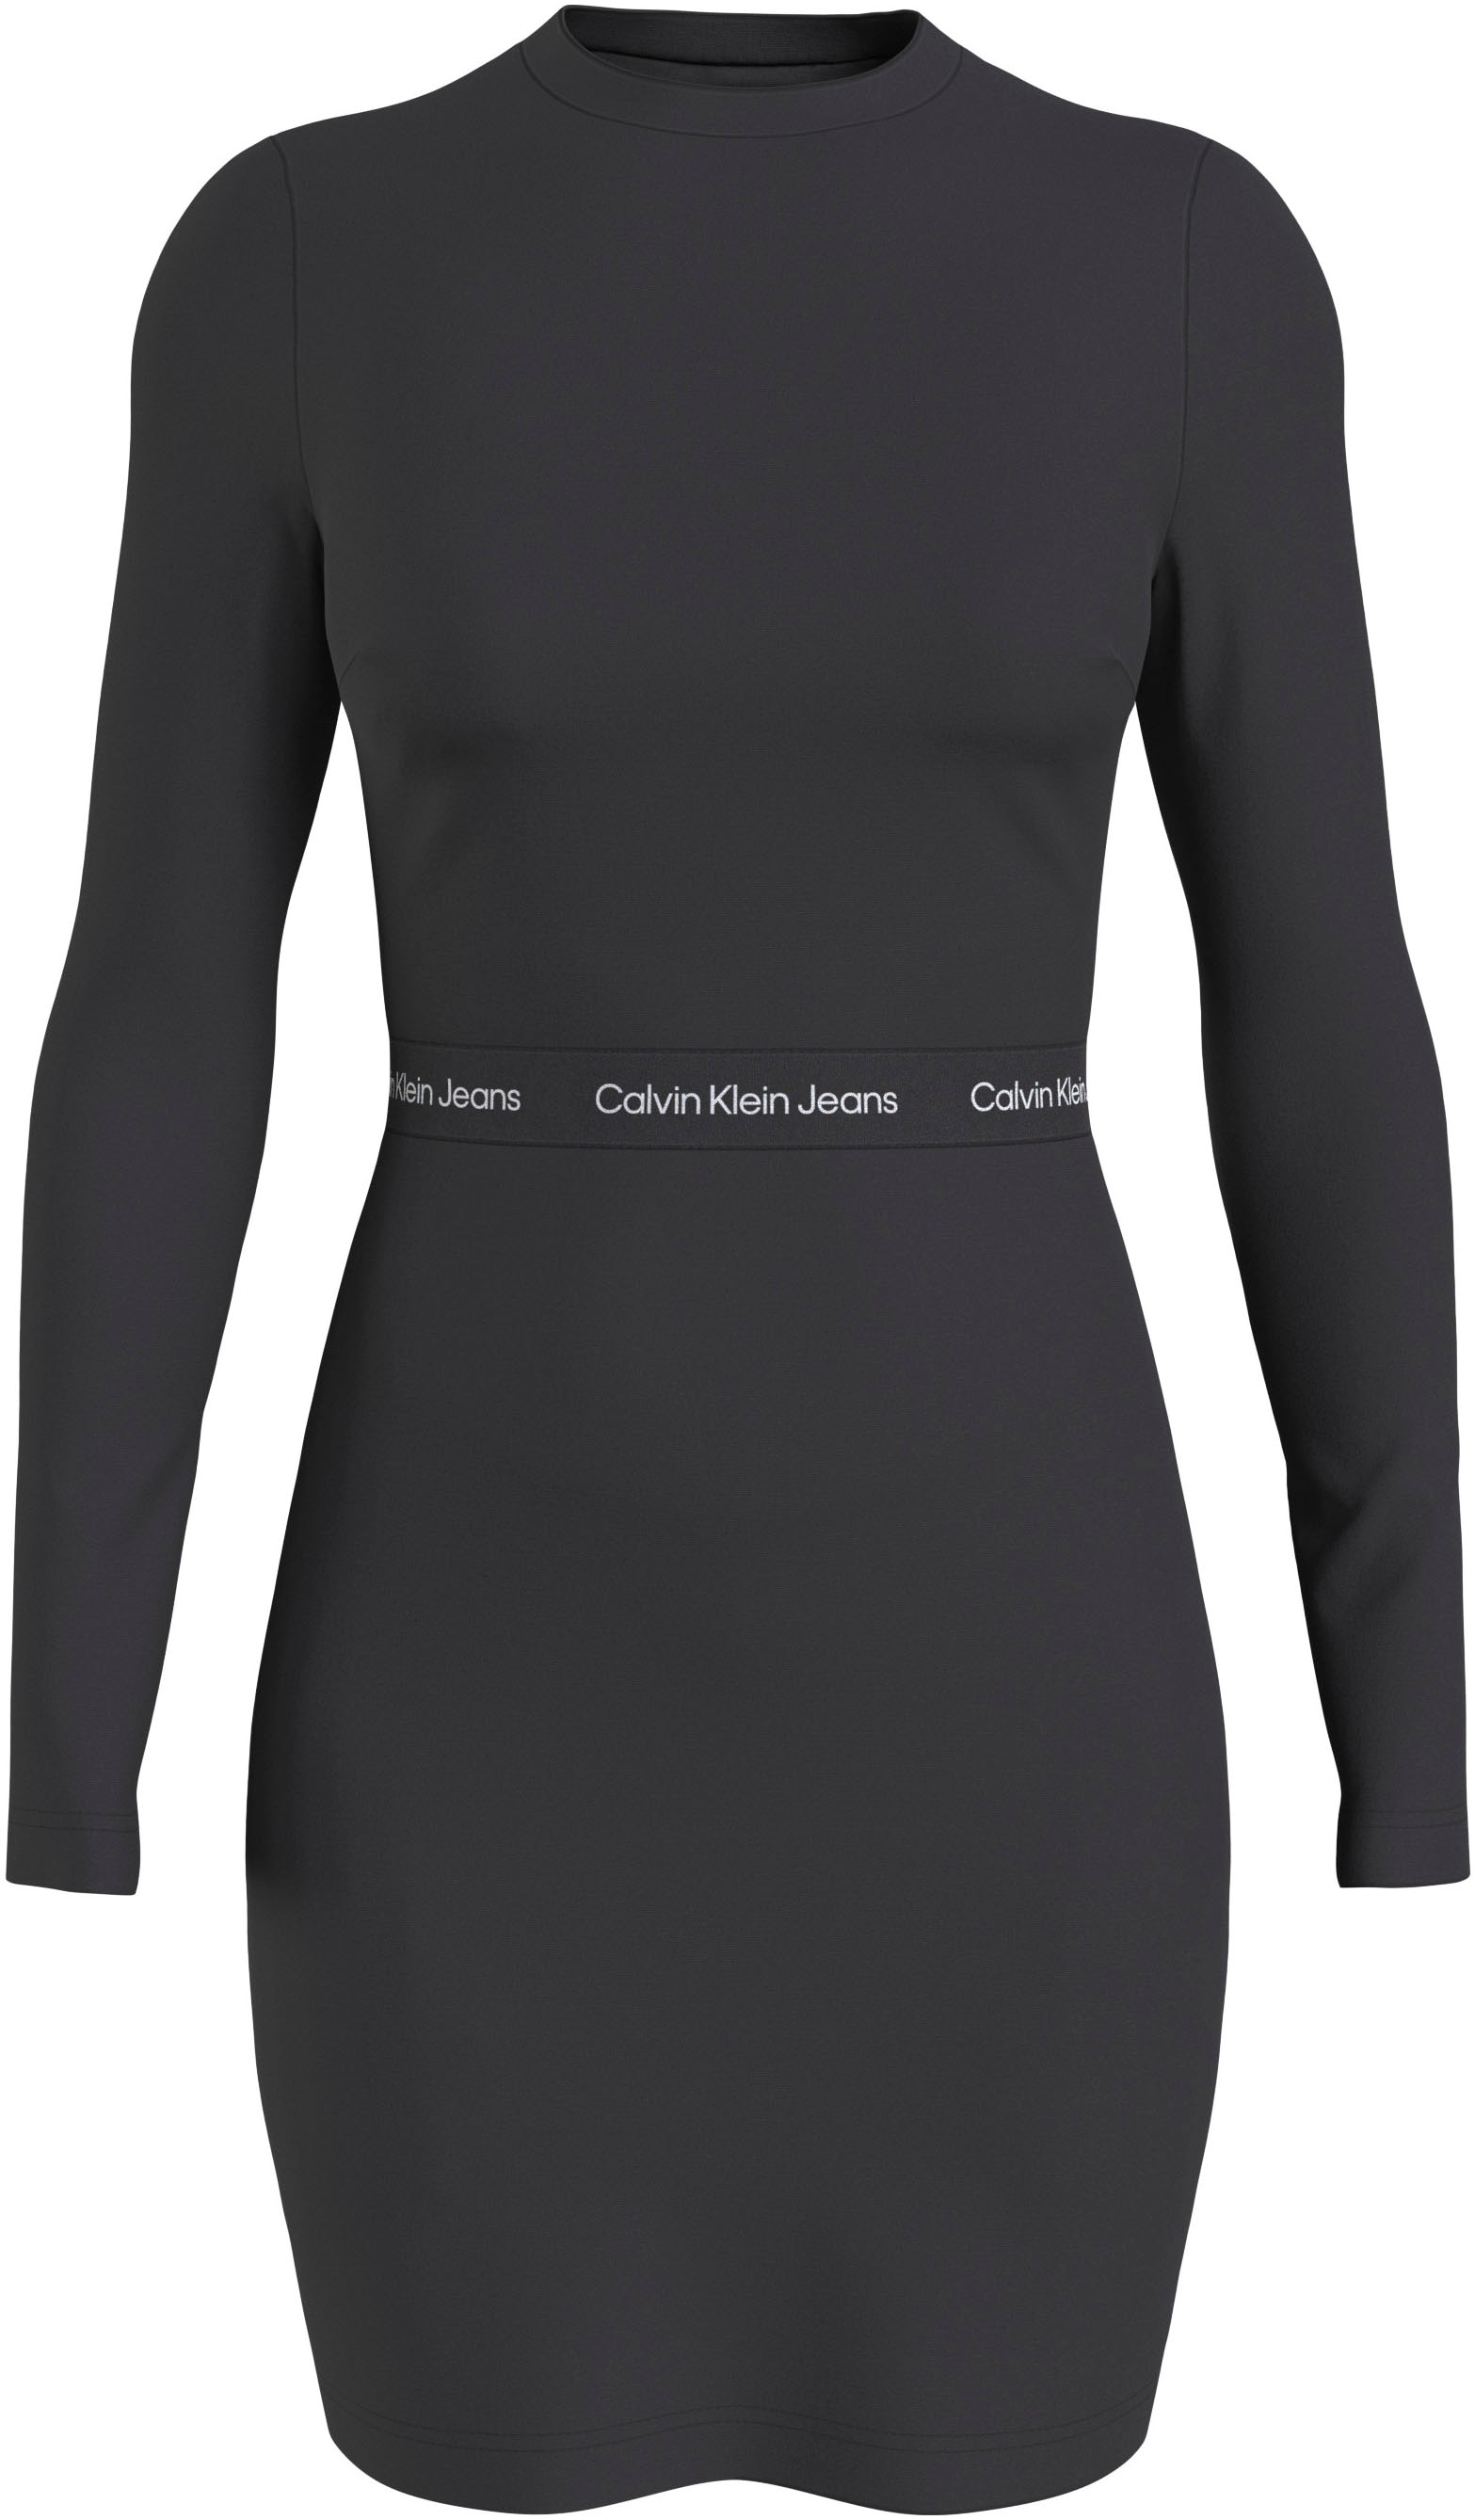 DRESS« ELASTIC Jeans Calvin Klein MILANO Jerseykleid kaufen »LOGO LS